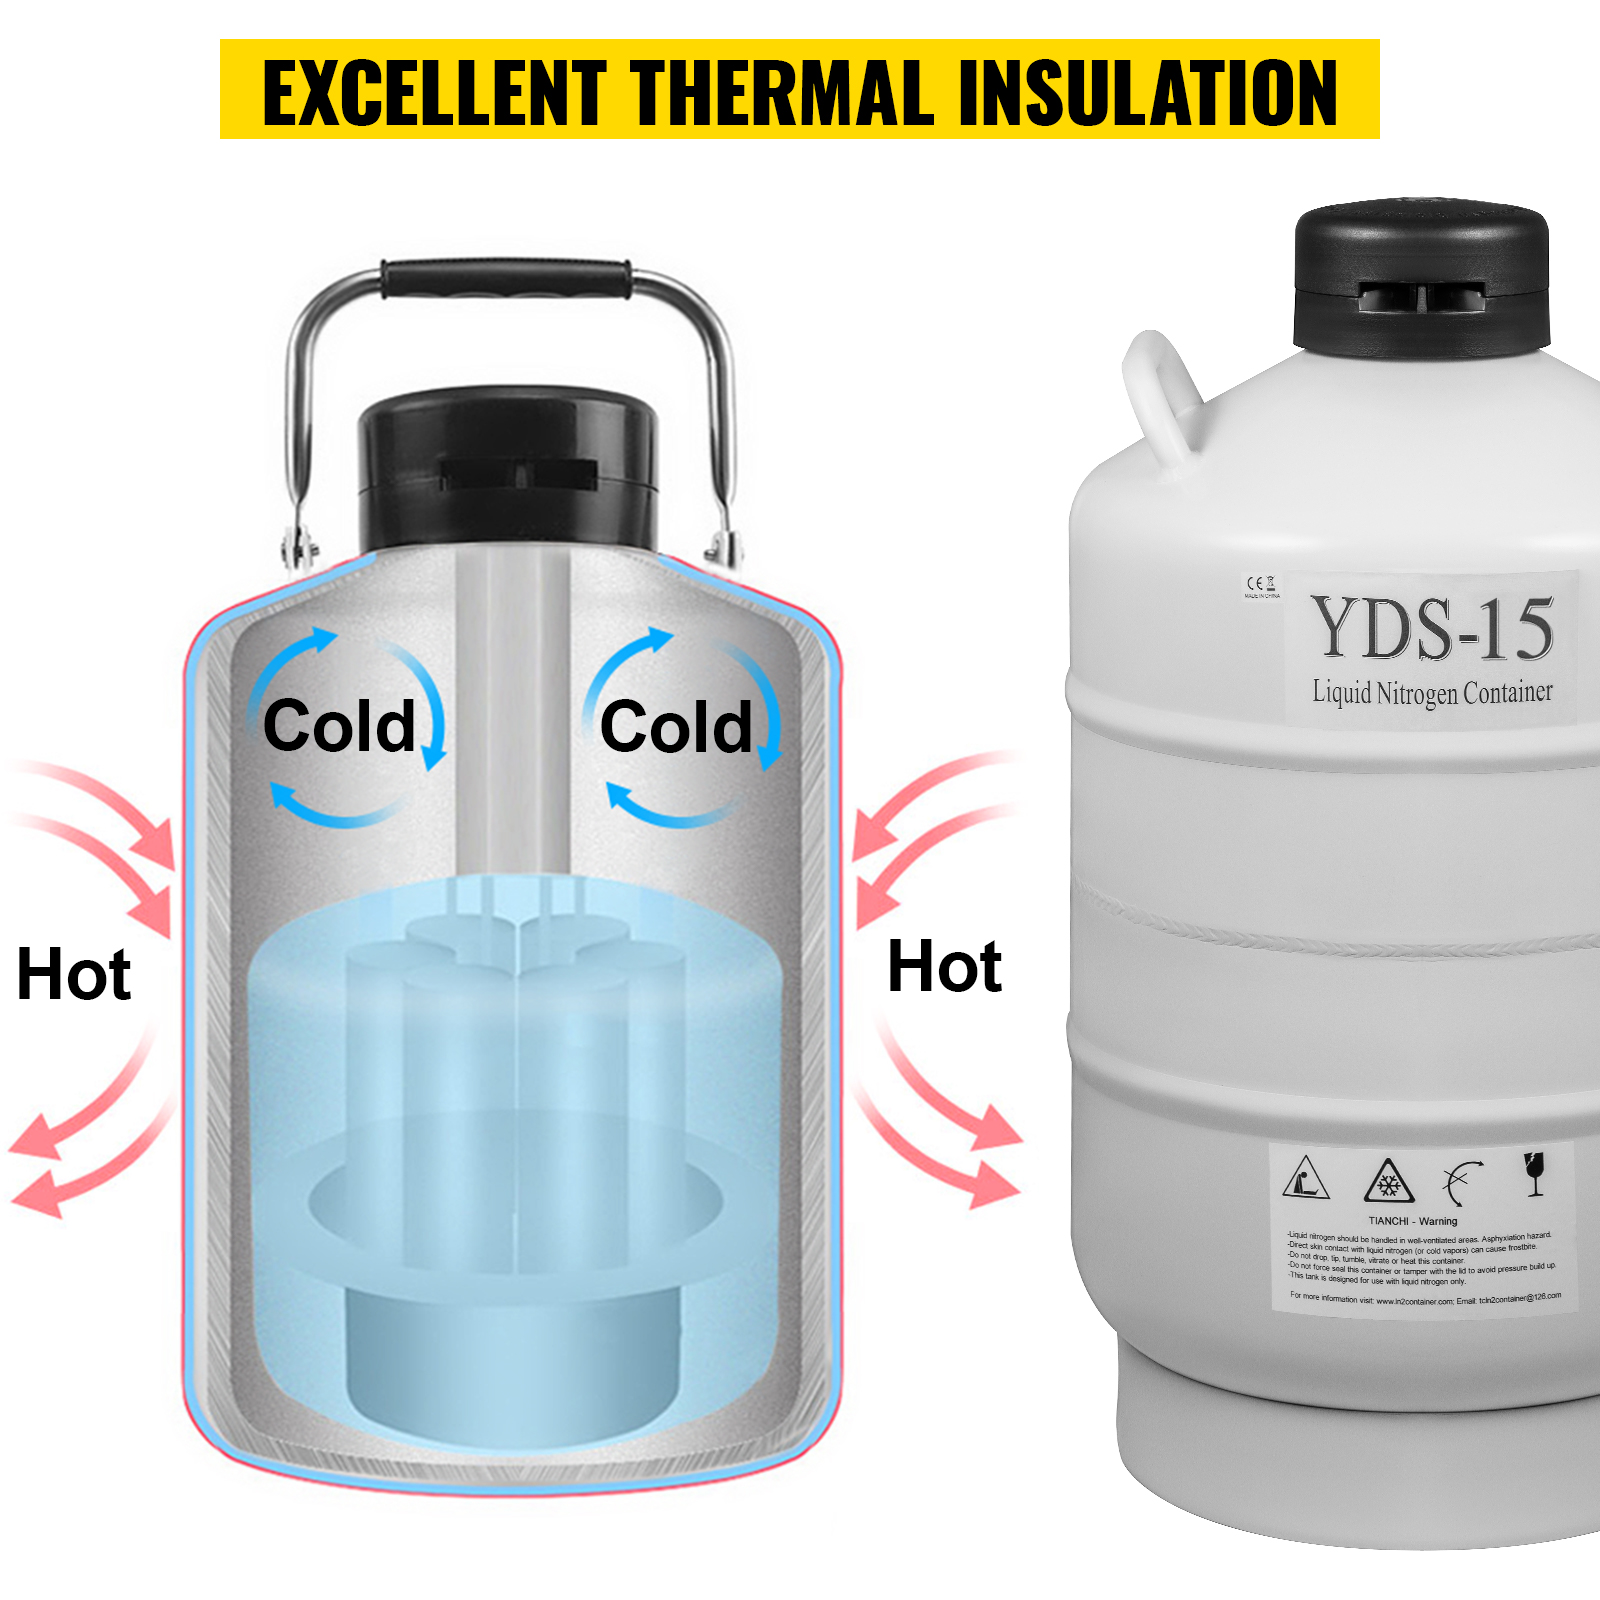 Réservoir azote liquide YDS 1-30 avec canister - Cryofarm - 06.05.0011